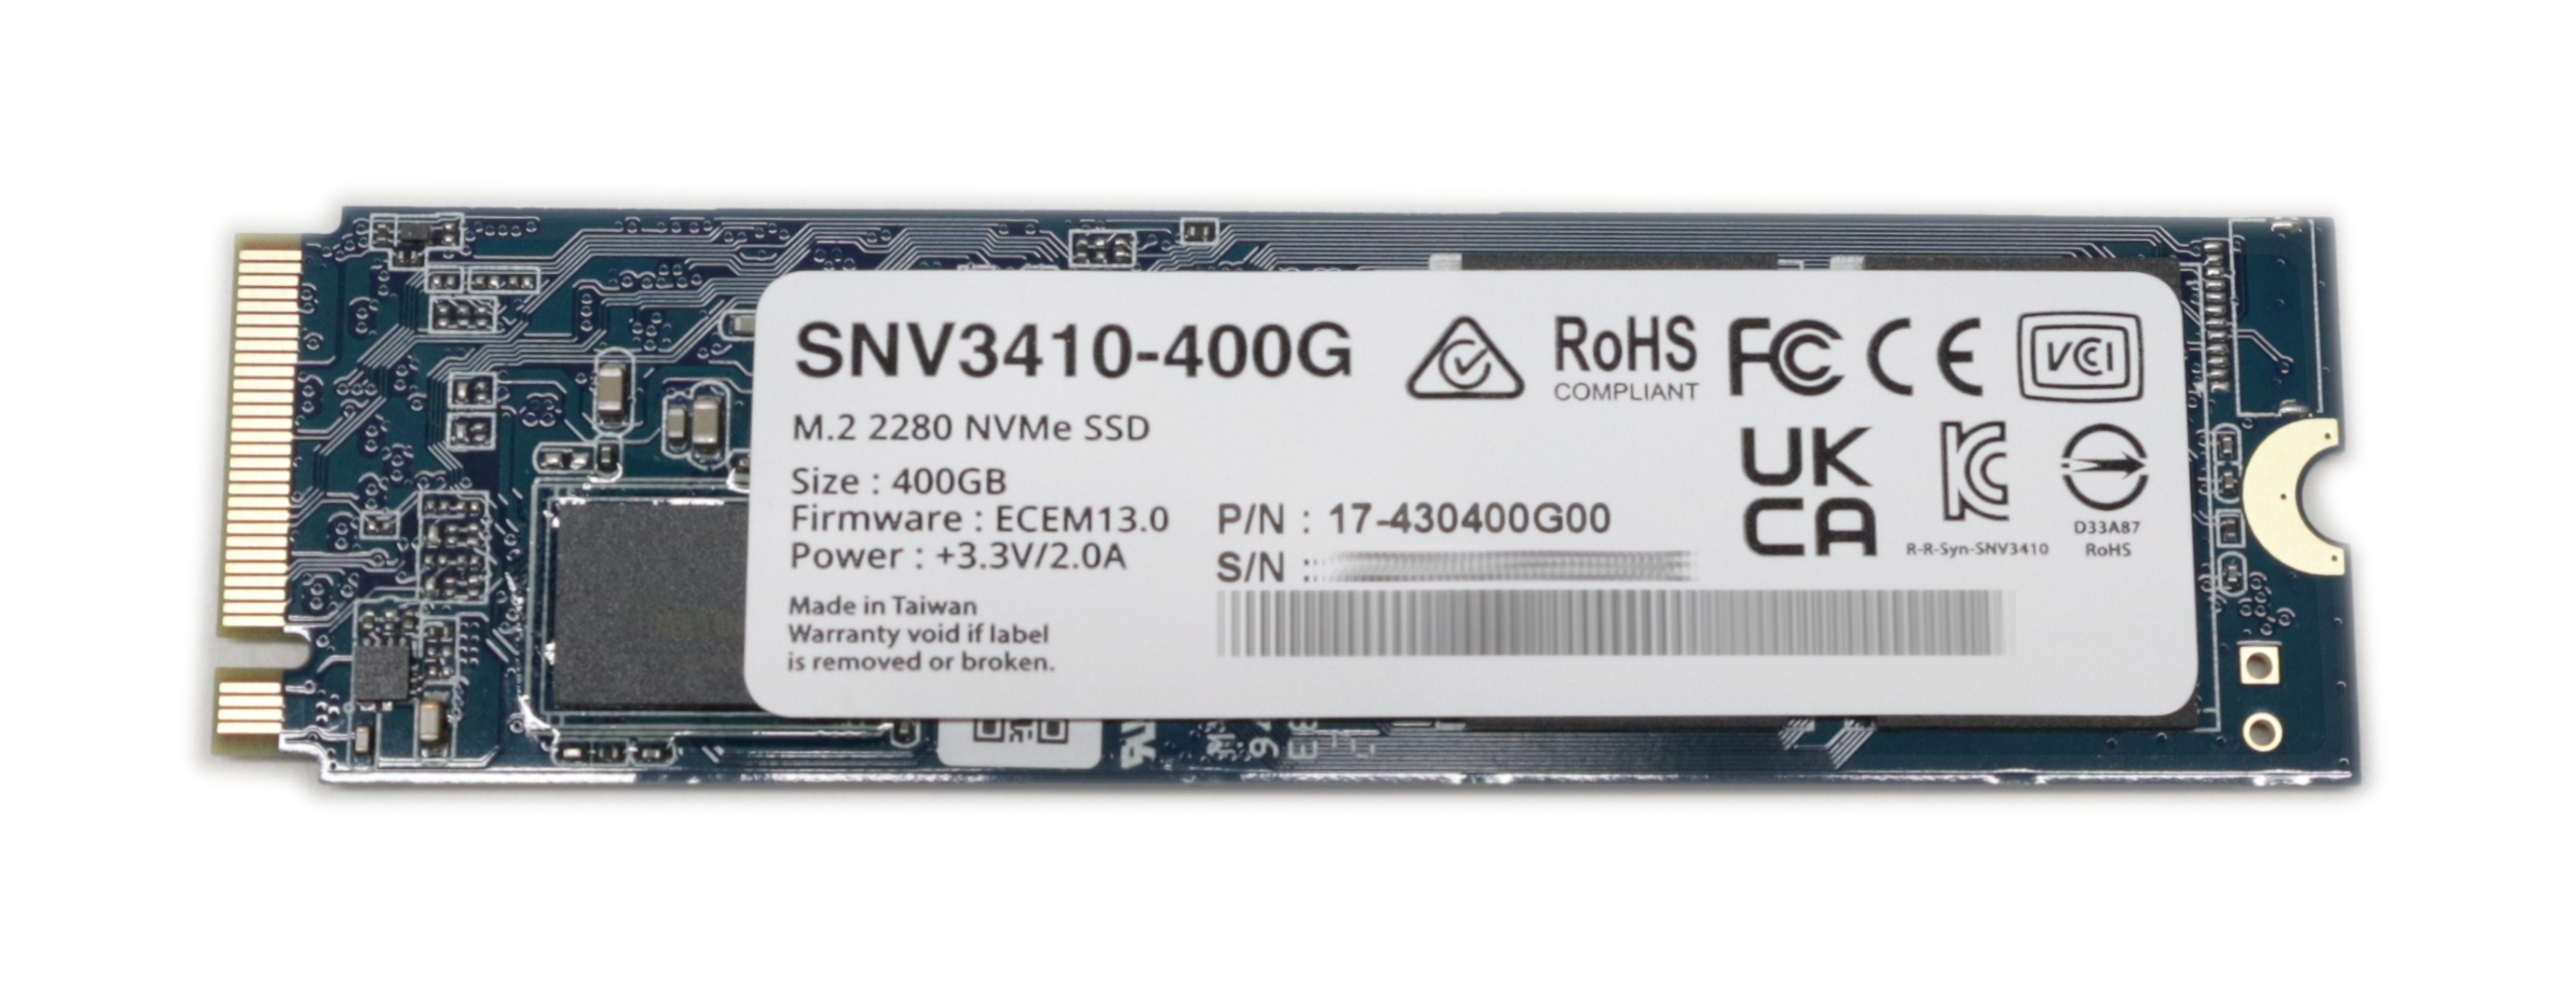 Synology SNV3410 400GB SSD M.2 2280 PCIe 3.0 x4 NVMe 17-430400G00 SNV3410-400G